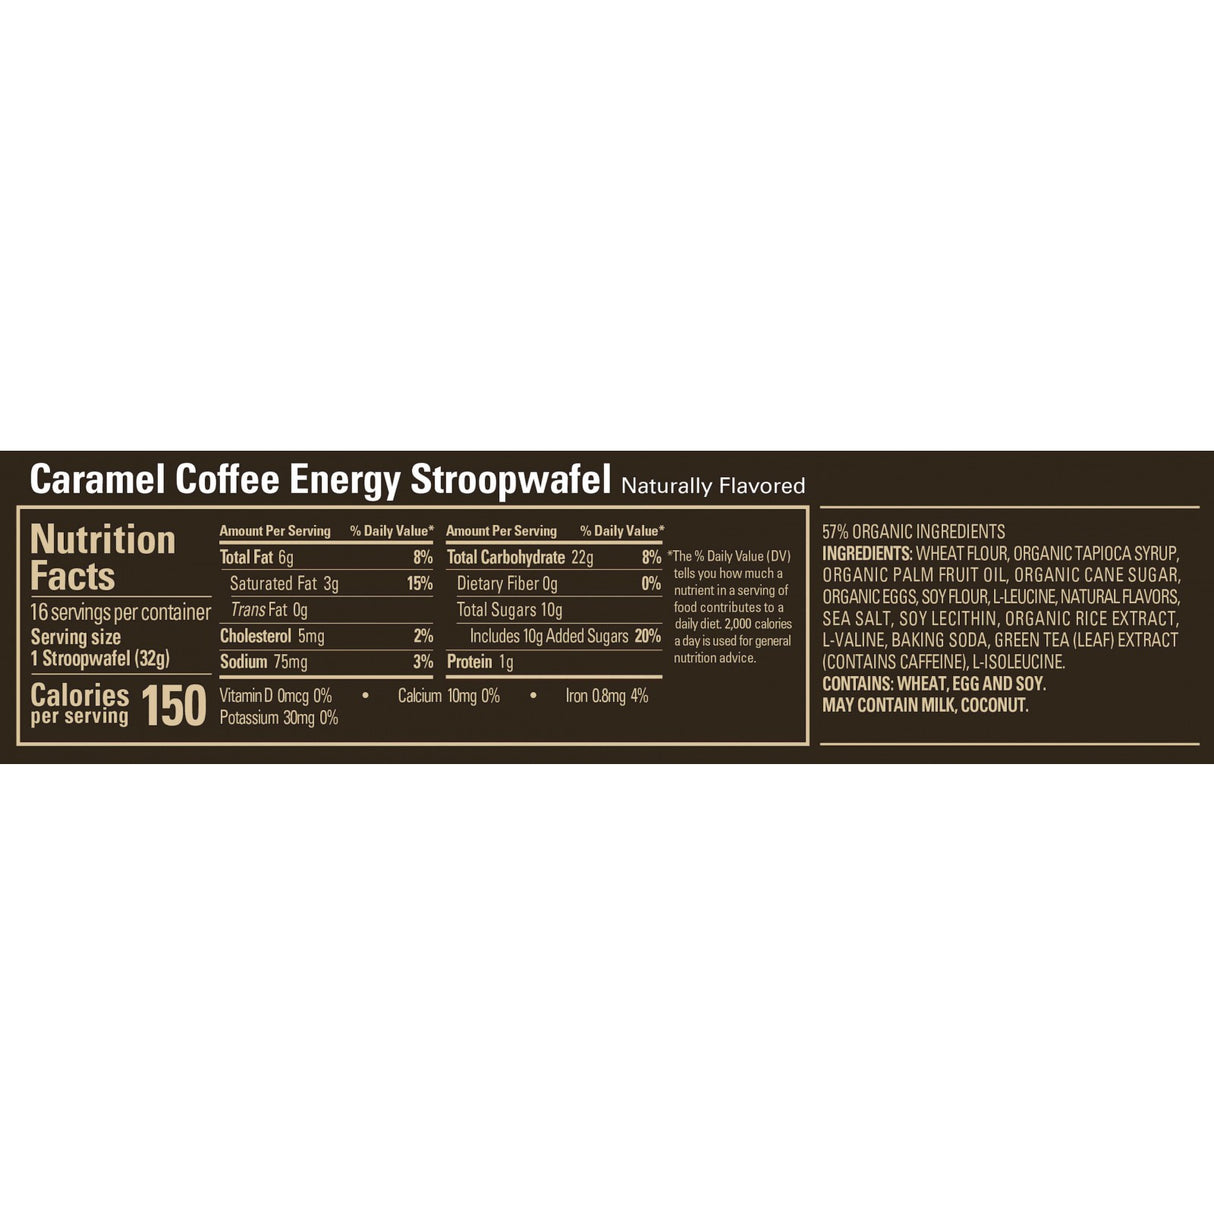 GU Energy Stroopwafel - Caramel Coffee (16 x 30g)